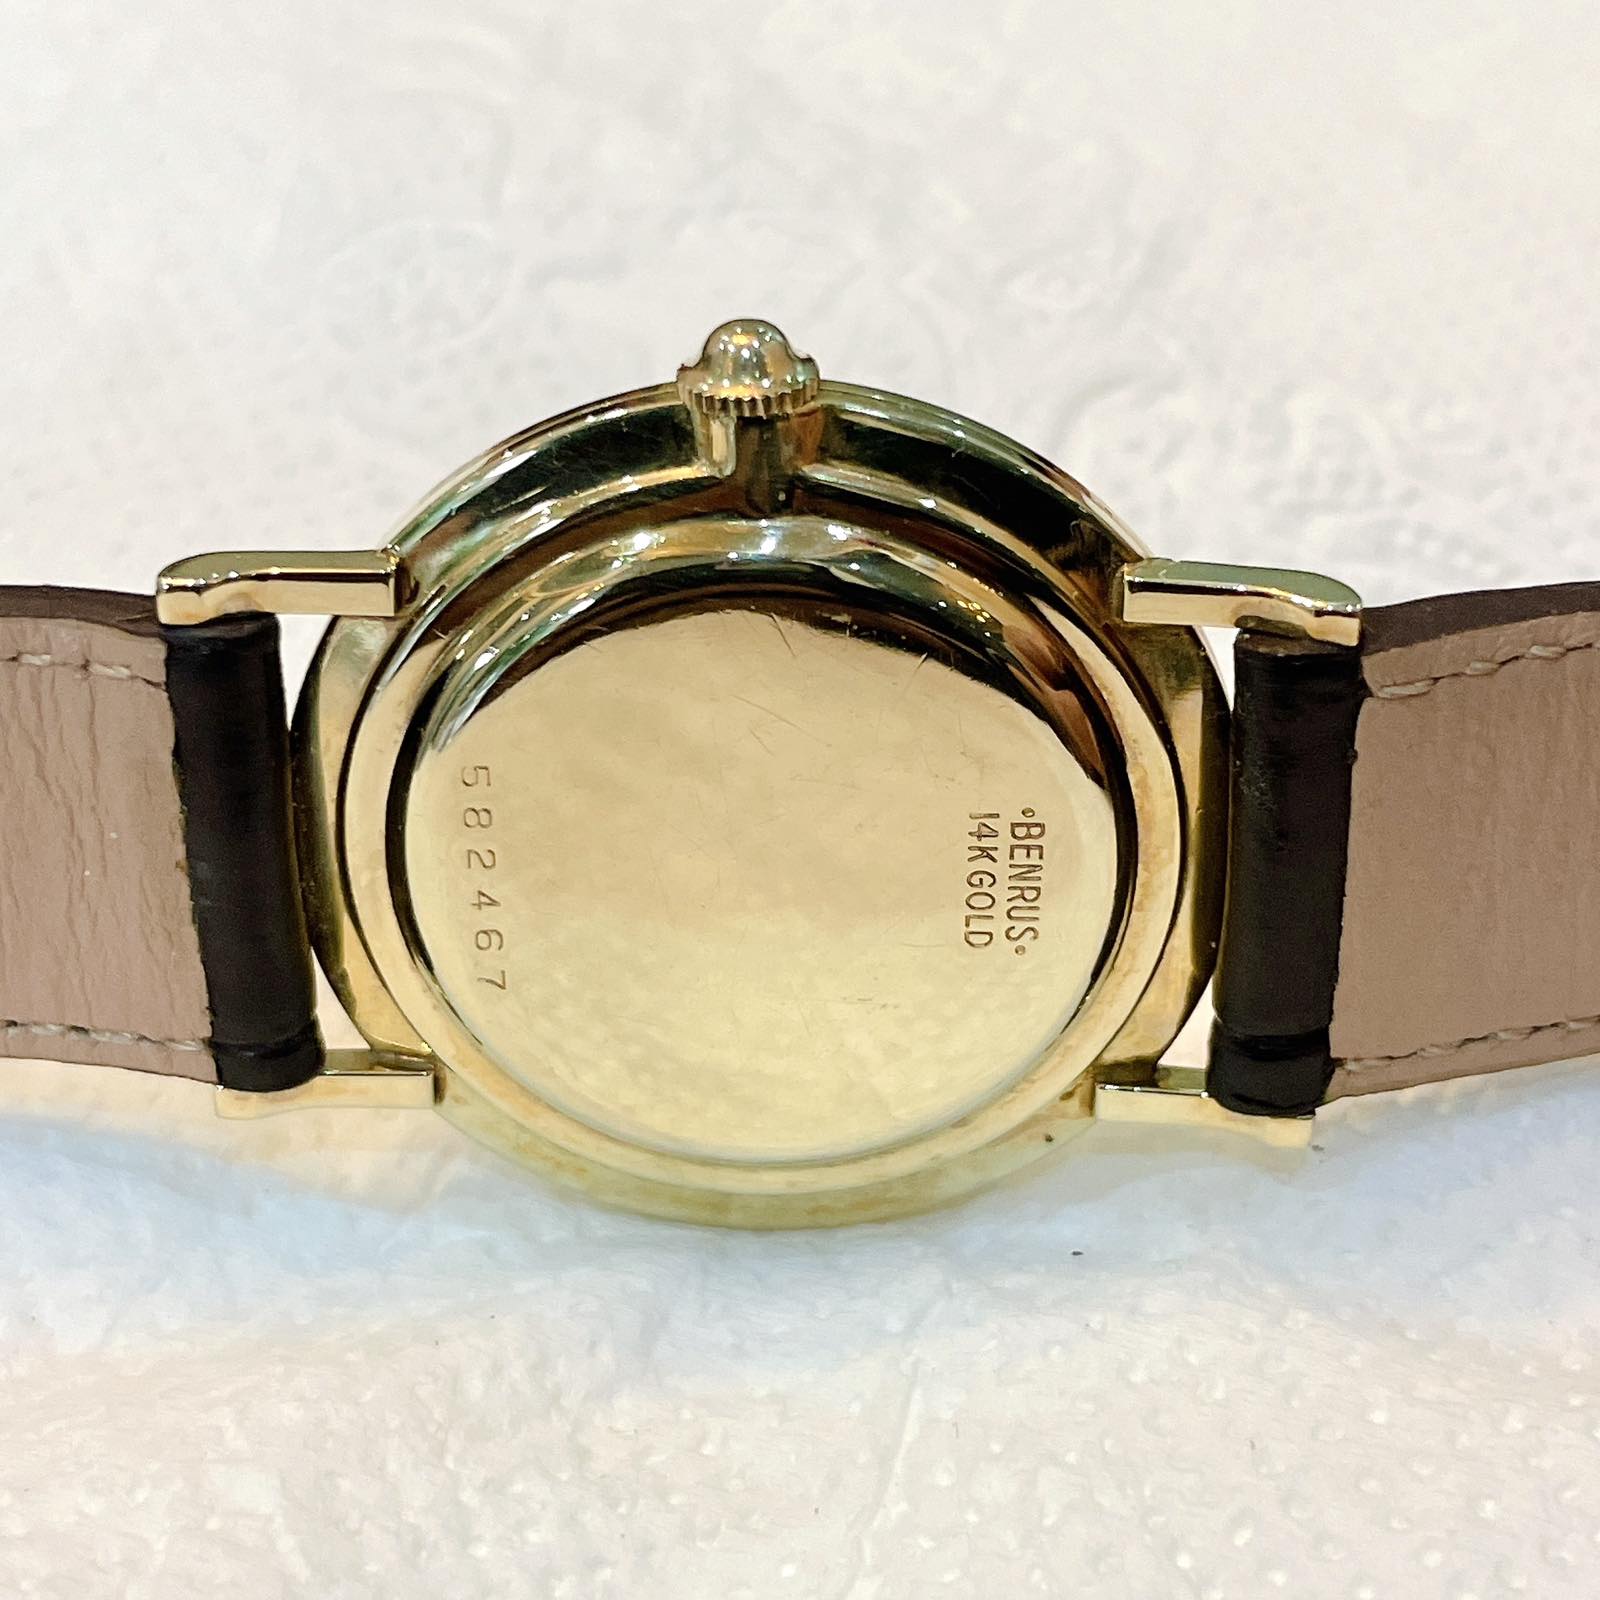 Đồng hồ cổ Benrus lên dây vàng đặc 14k chính hãng Thụy Sĩ 